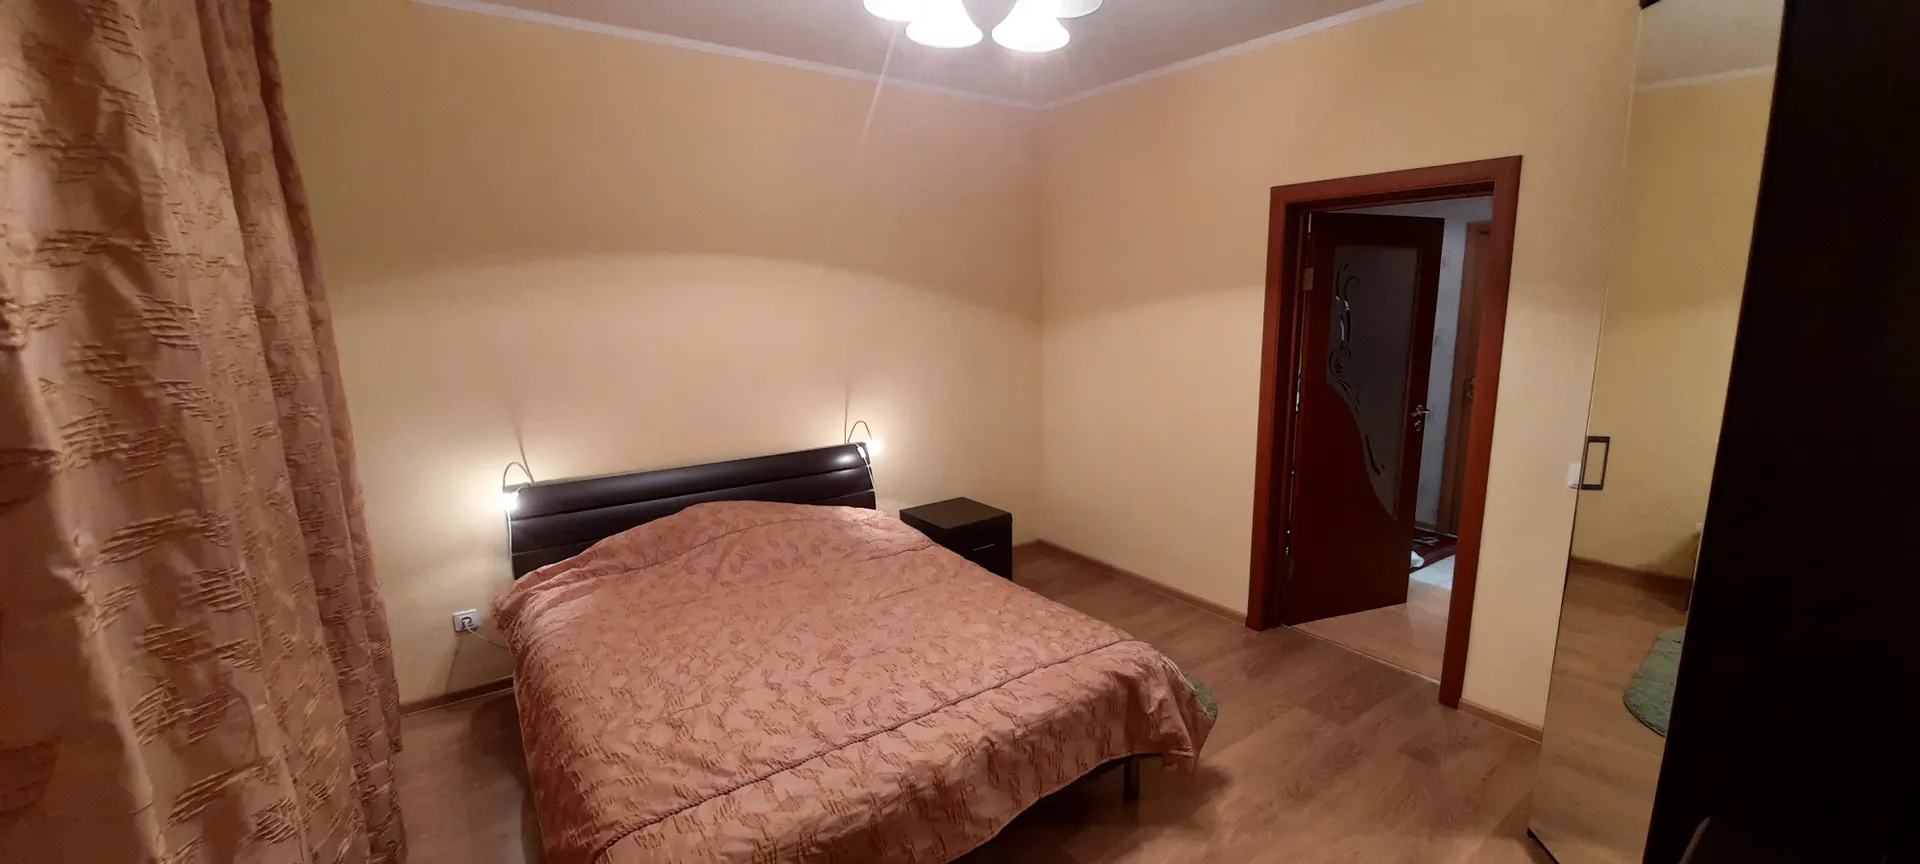 Спальная №2: широкая двуспальная кровать, шкаф, телевизор, комод, тумбочка.